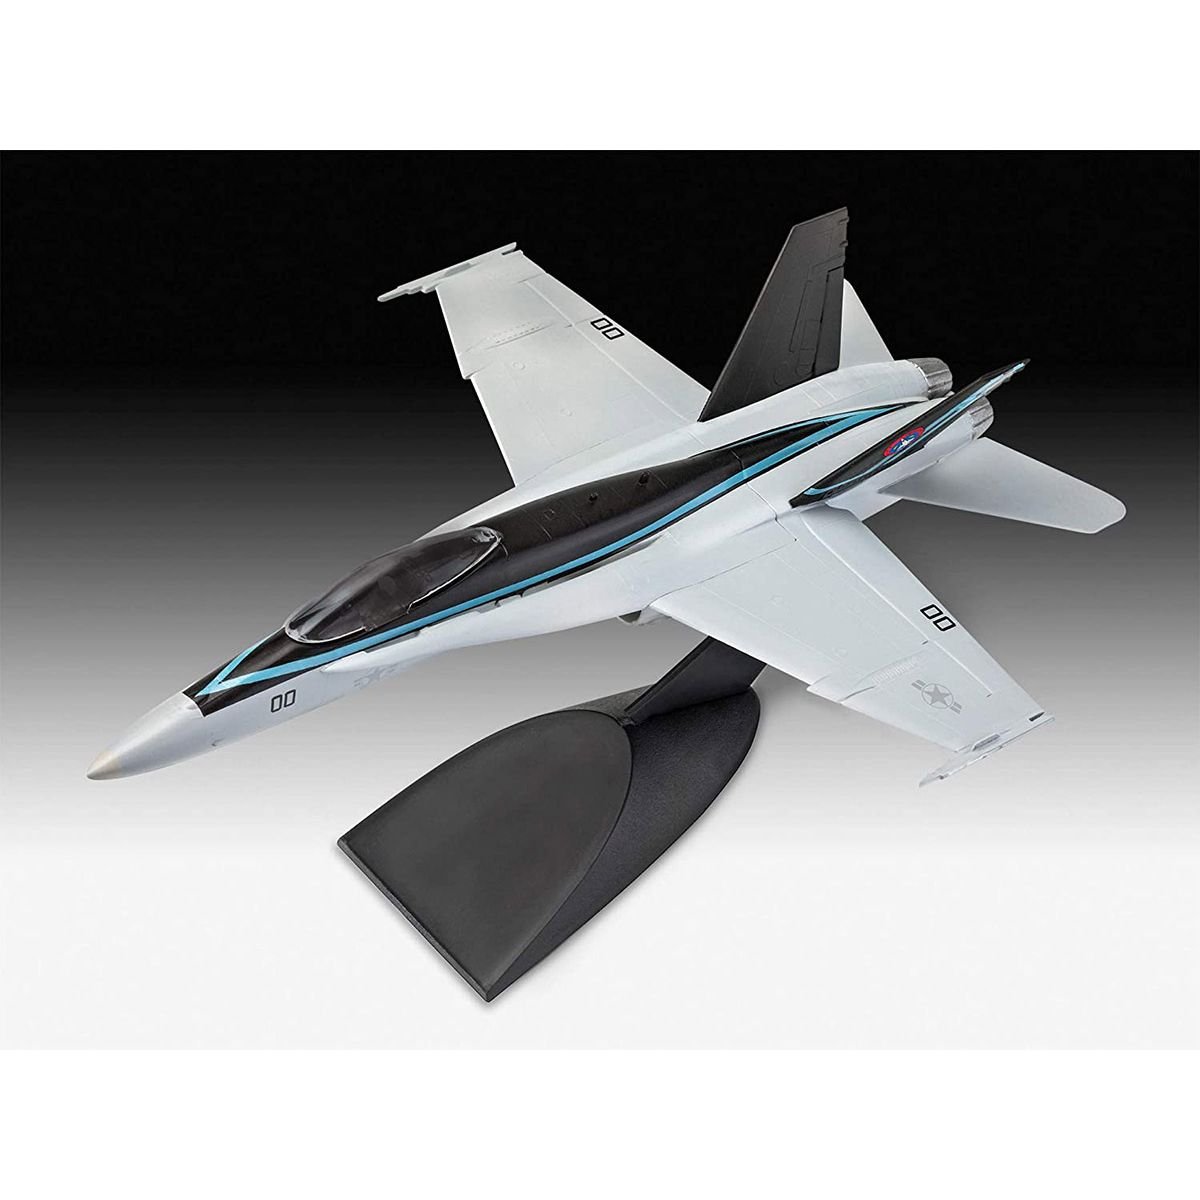 Збірна модель літака Revell Набір F/A-18 Hornet з фільму Top Gun: Maverick, рівень 2, масштаб 1:72, 16 деталей (RVL-64965) - фото 2